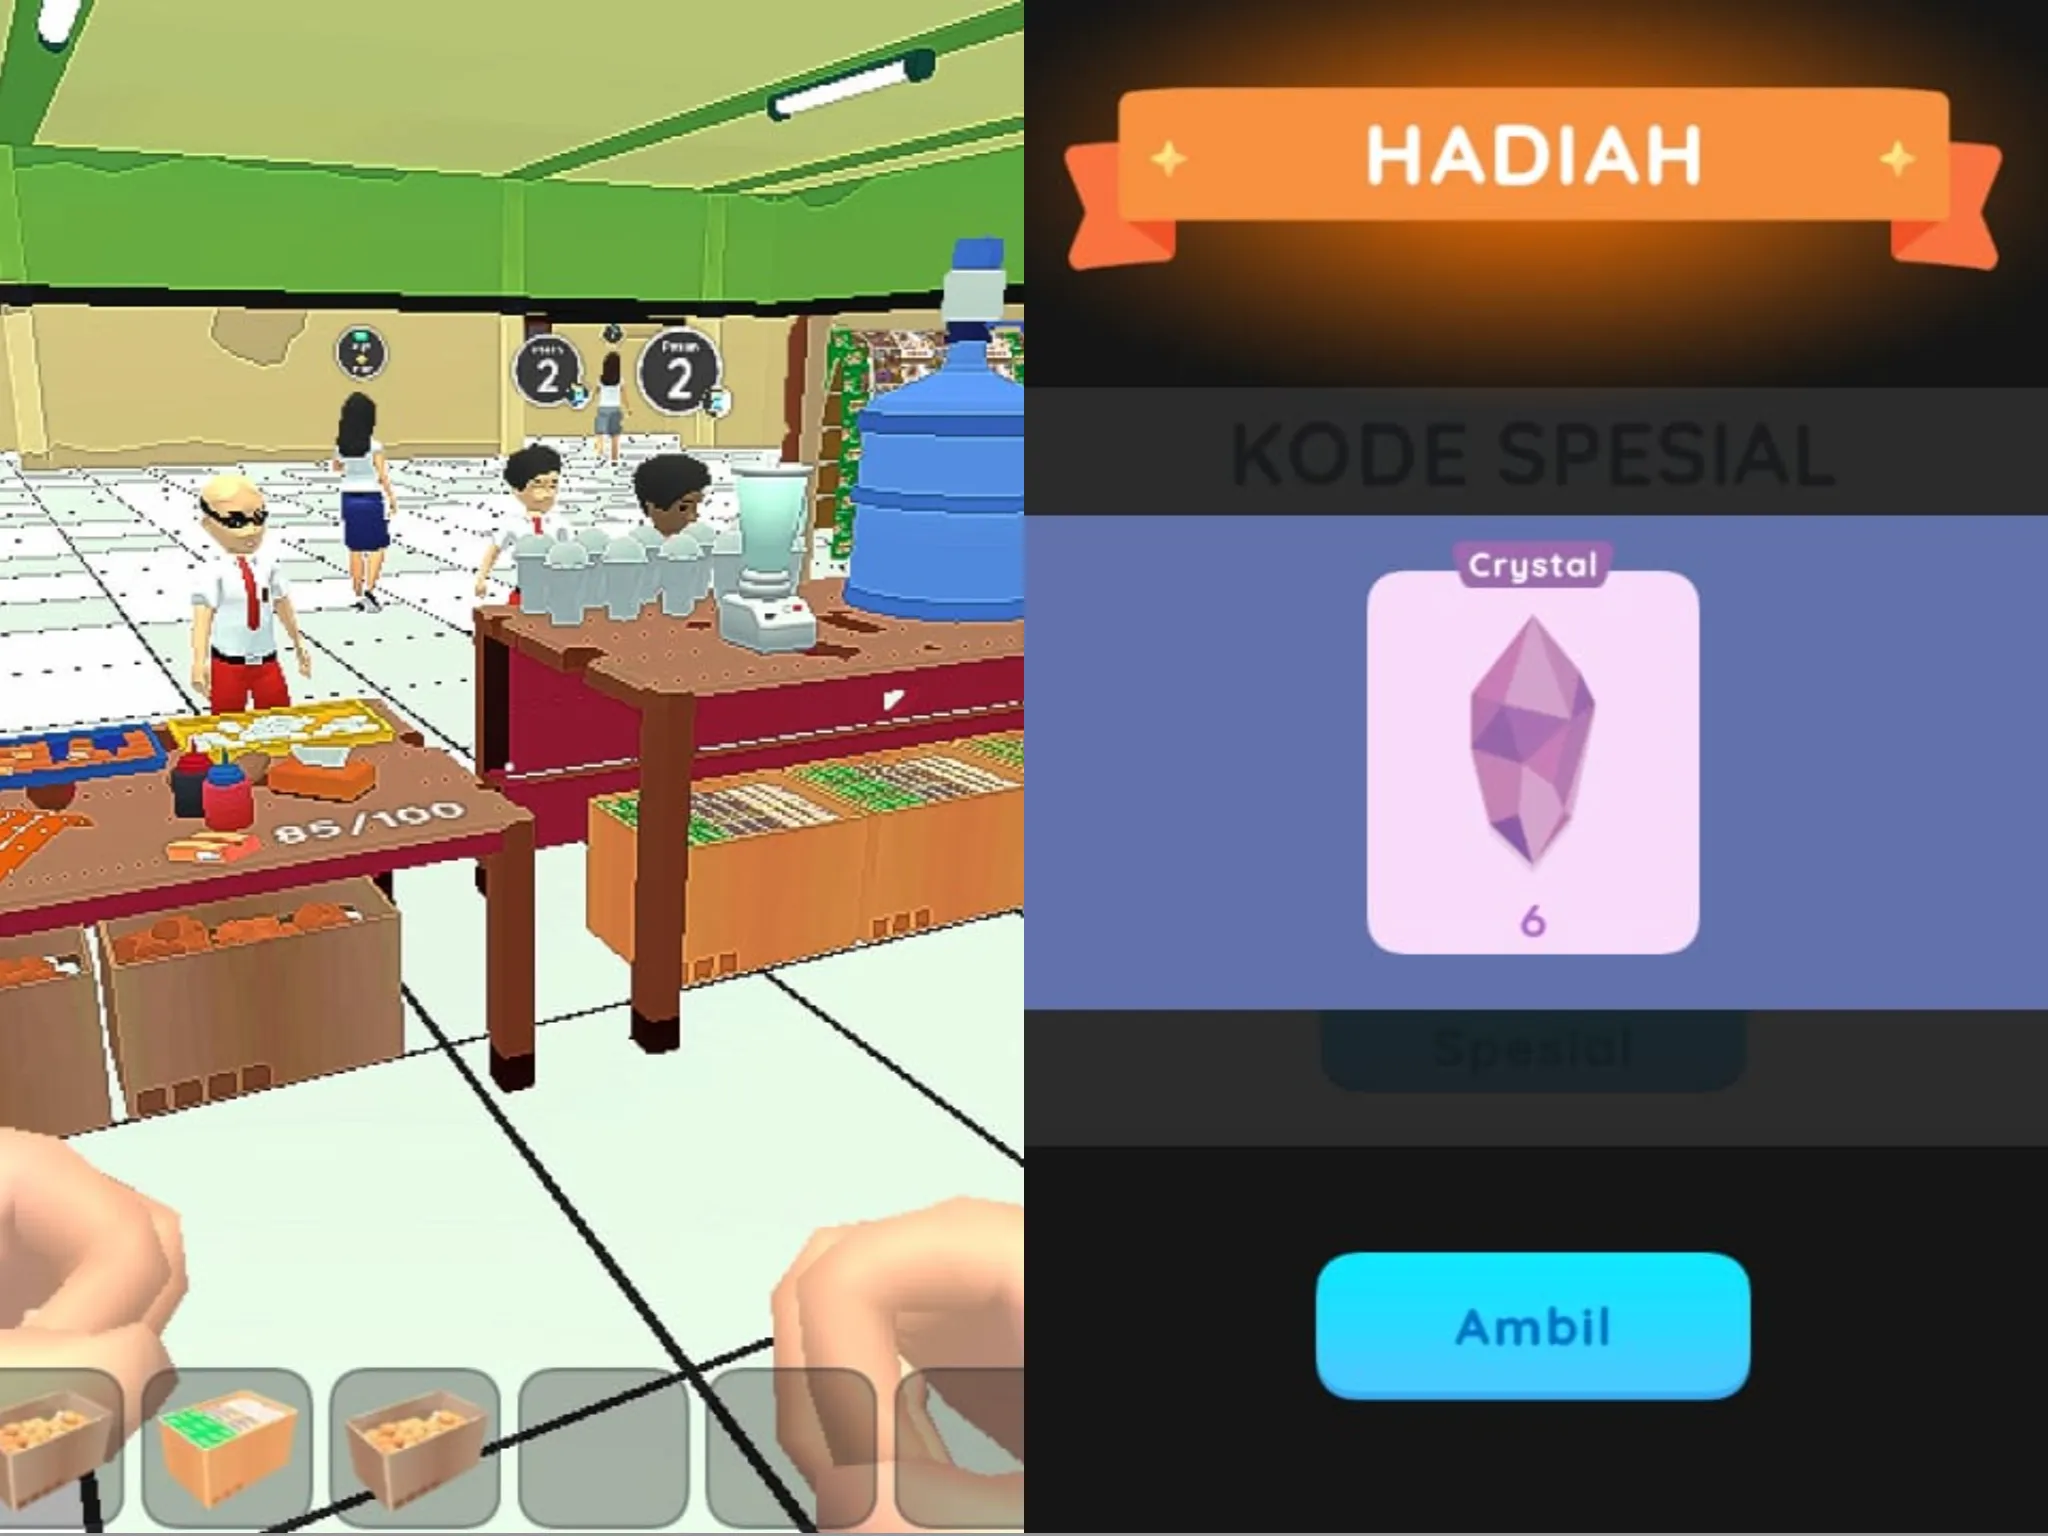 Kode Redeem Kantin Sekolah Simulator Spesial Idul Adha Nih!/ Kolase Game Kantin Sekolah Simulator